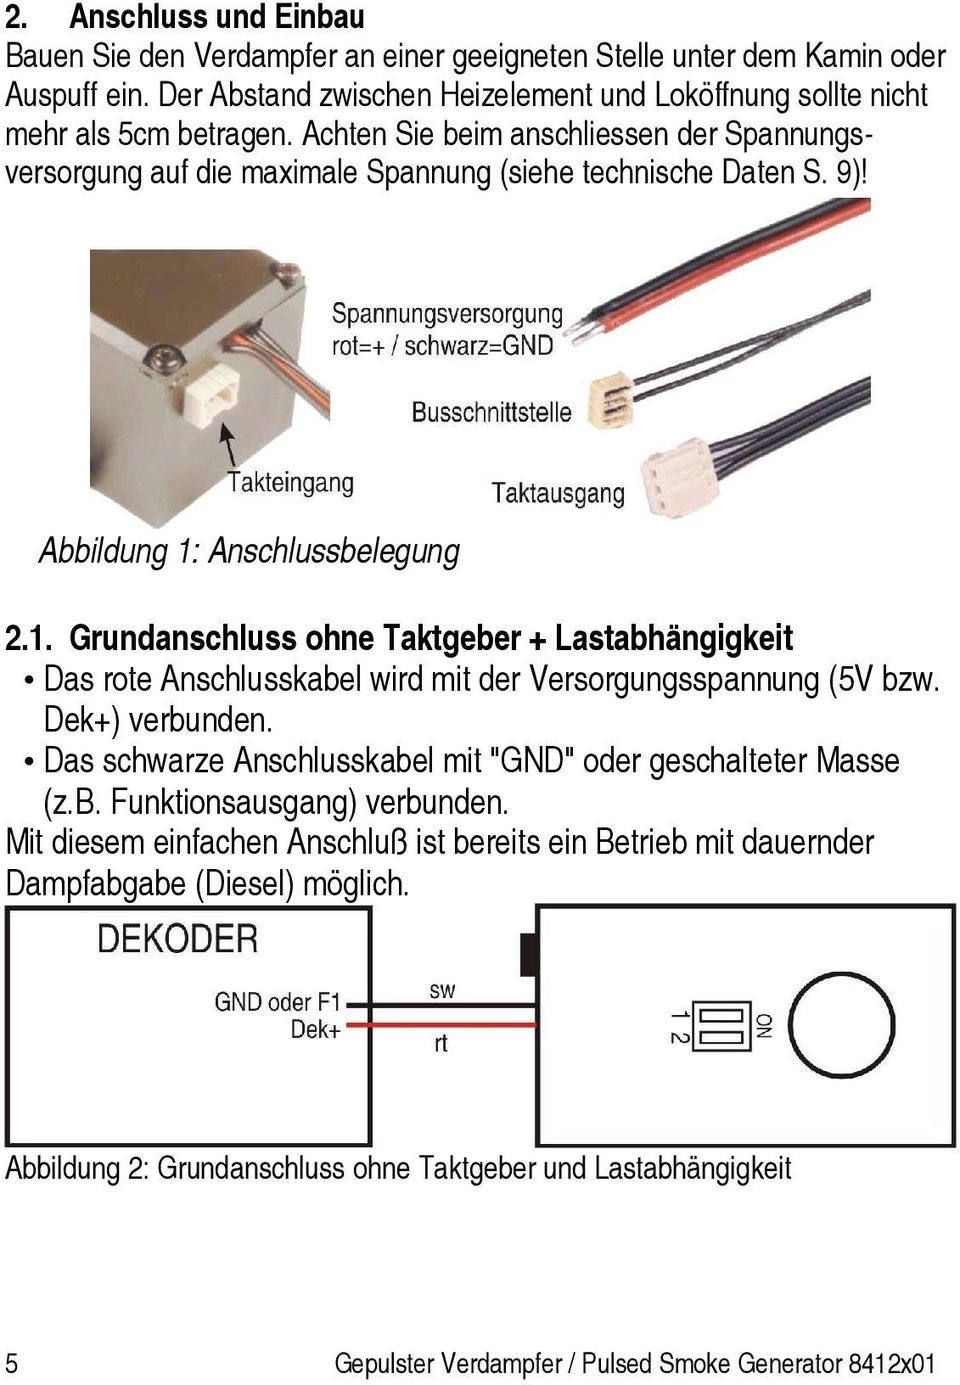 Anschlussbelegung 2.1. Grundanschluss ohne Taktgeber + Lastabhängigkeit Das rote Anschlusskabel wird mit der Versorgungsspannung (5V bzw. Dek+) verbunden.